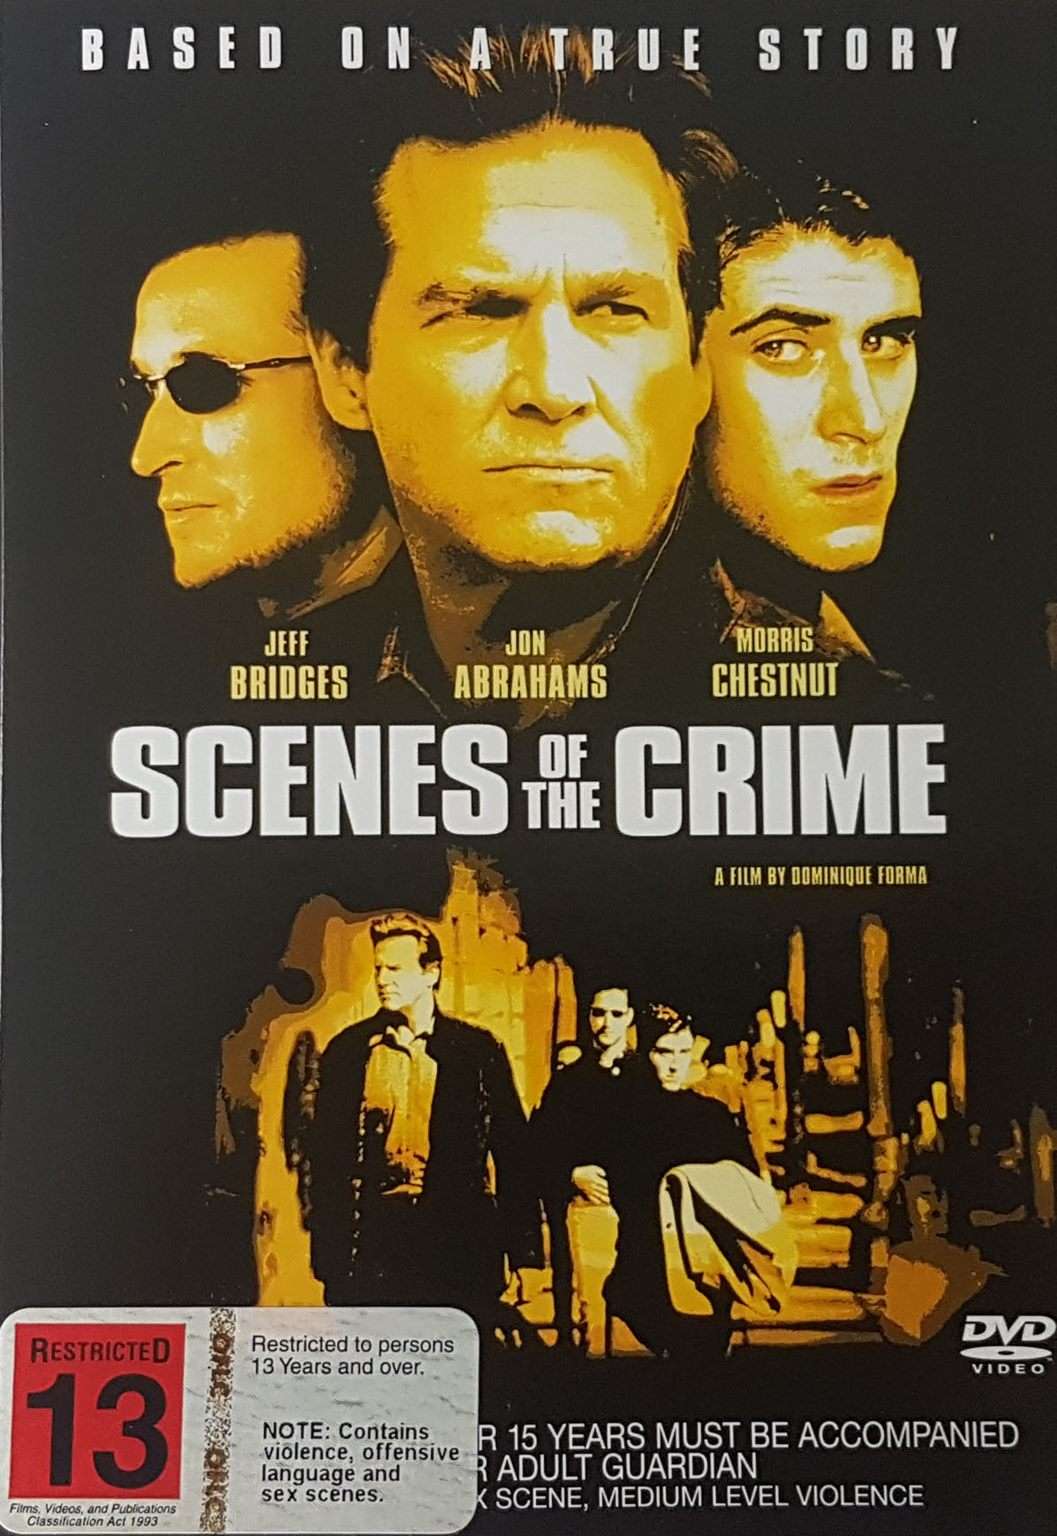 Scenes of the Crime